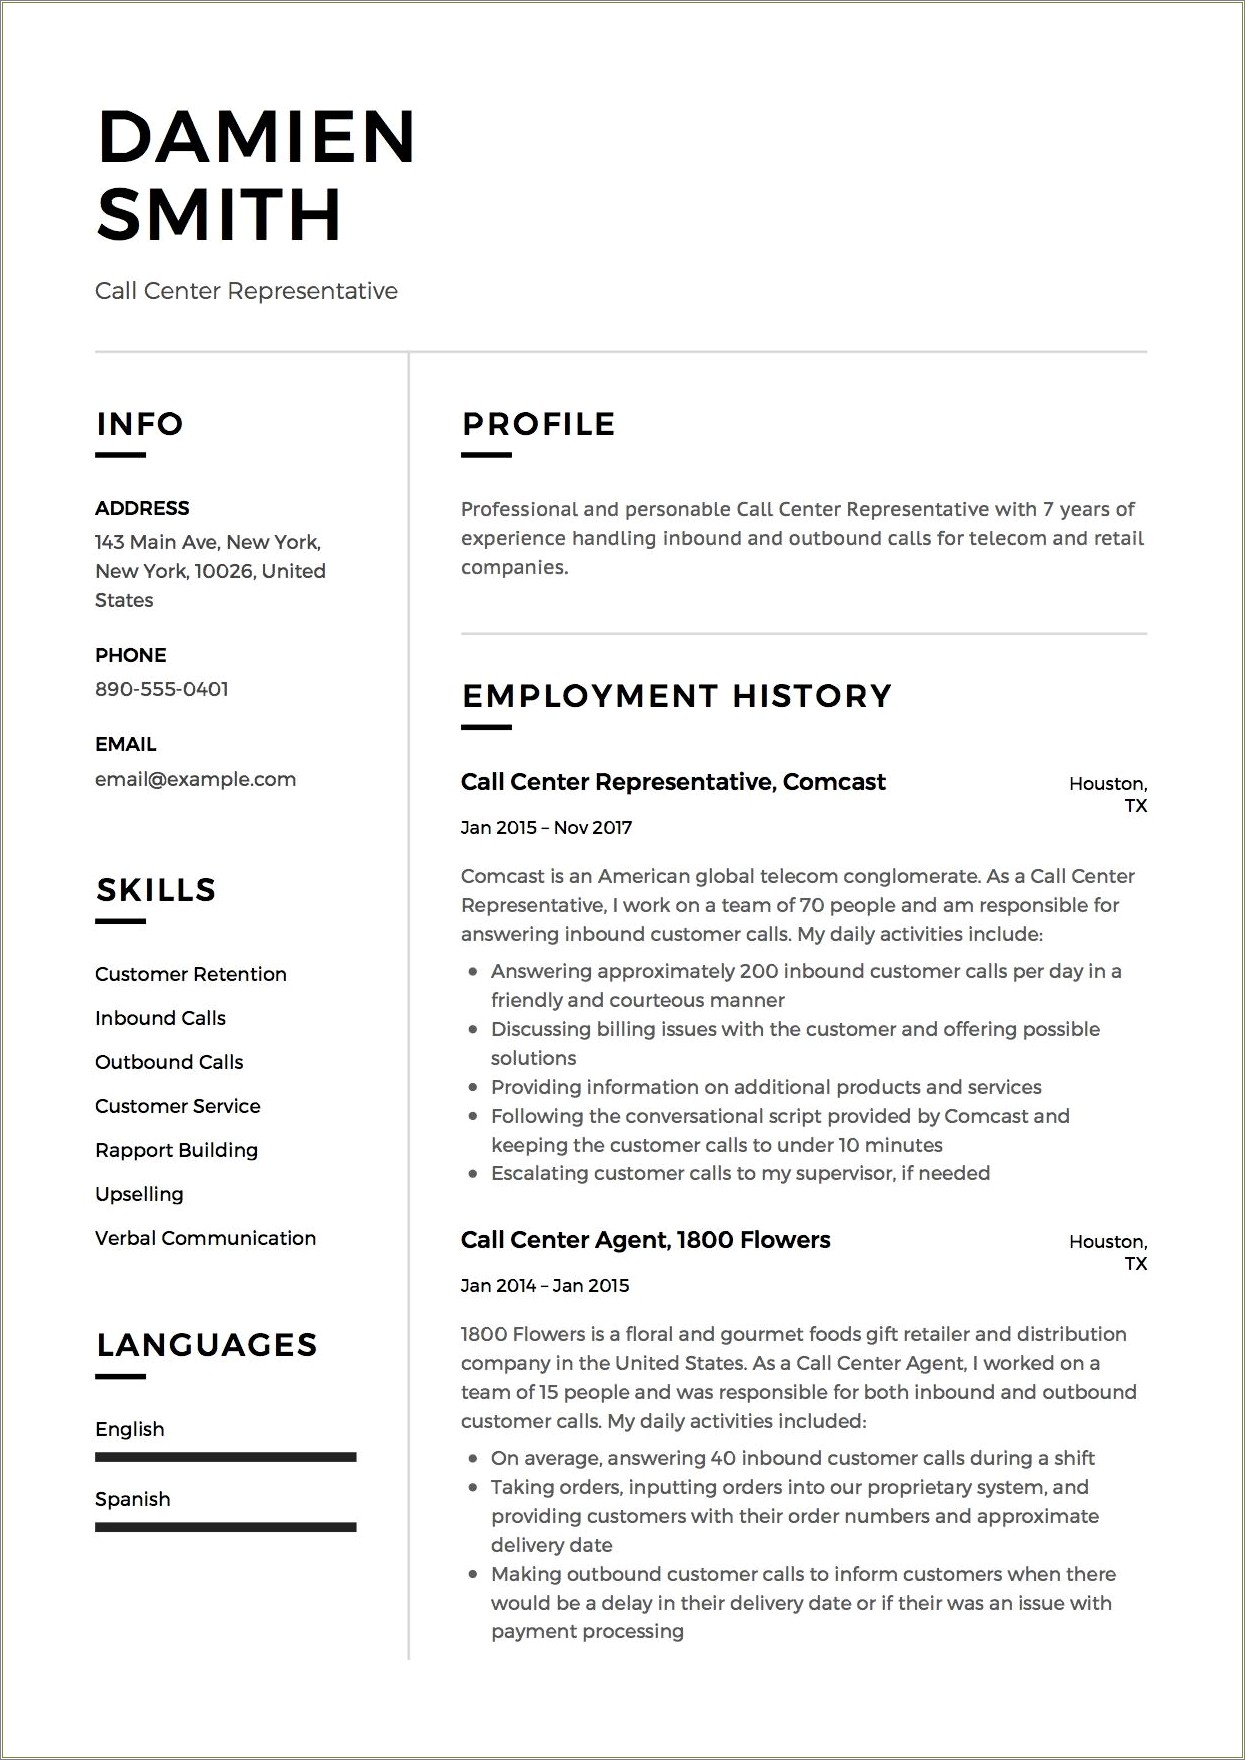 Call Center Rep Job Description For Resume